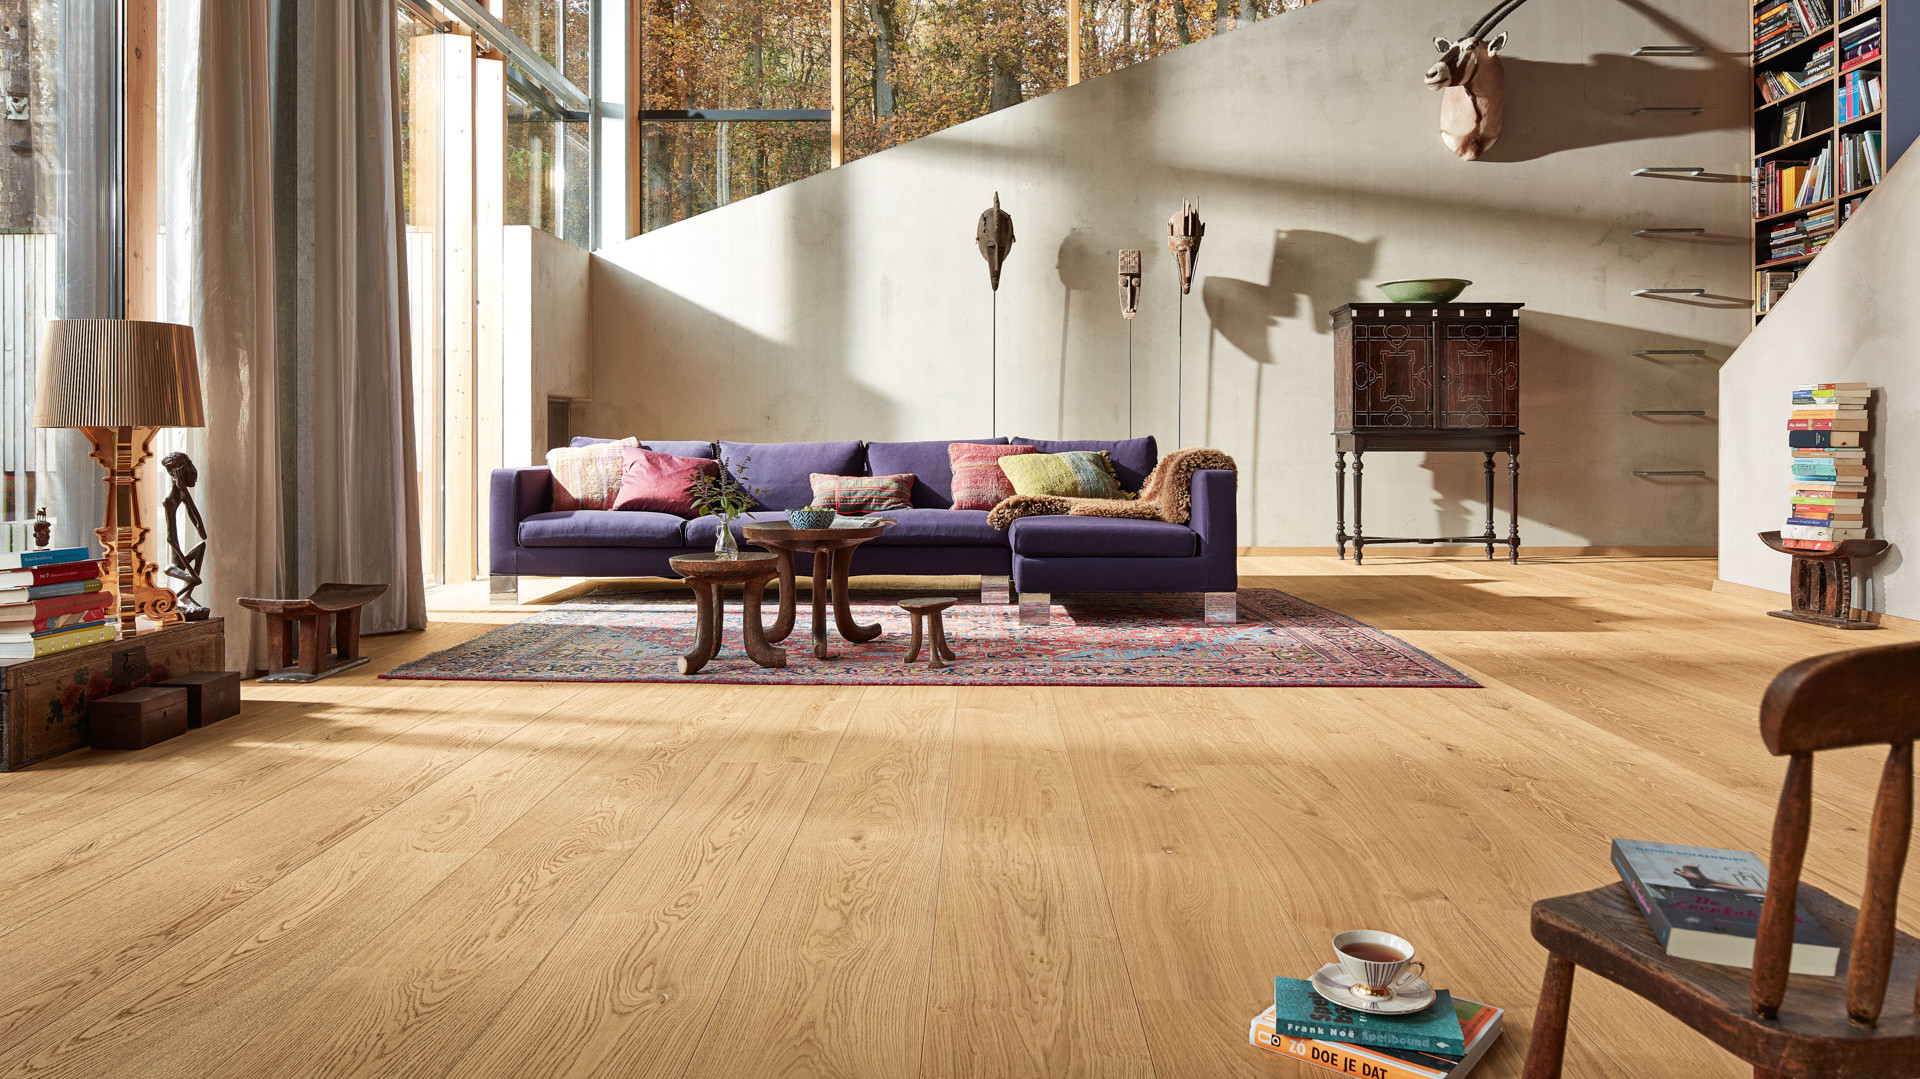 Lindura-Holzboden Eiche natur pure in einem hellen Wohnzimmer mit lila Sofa